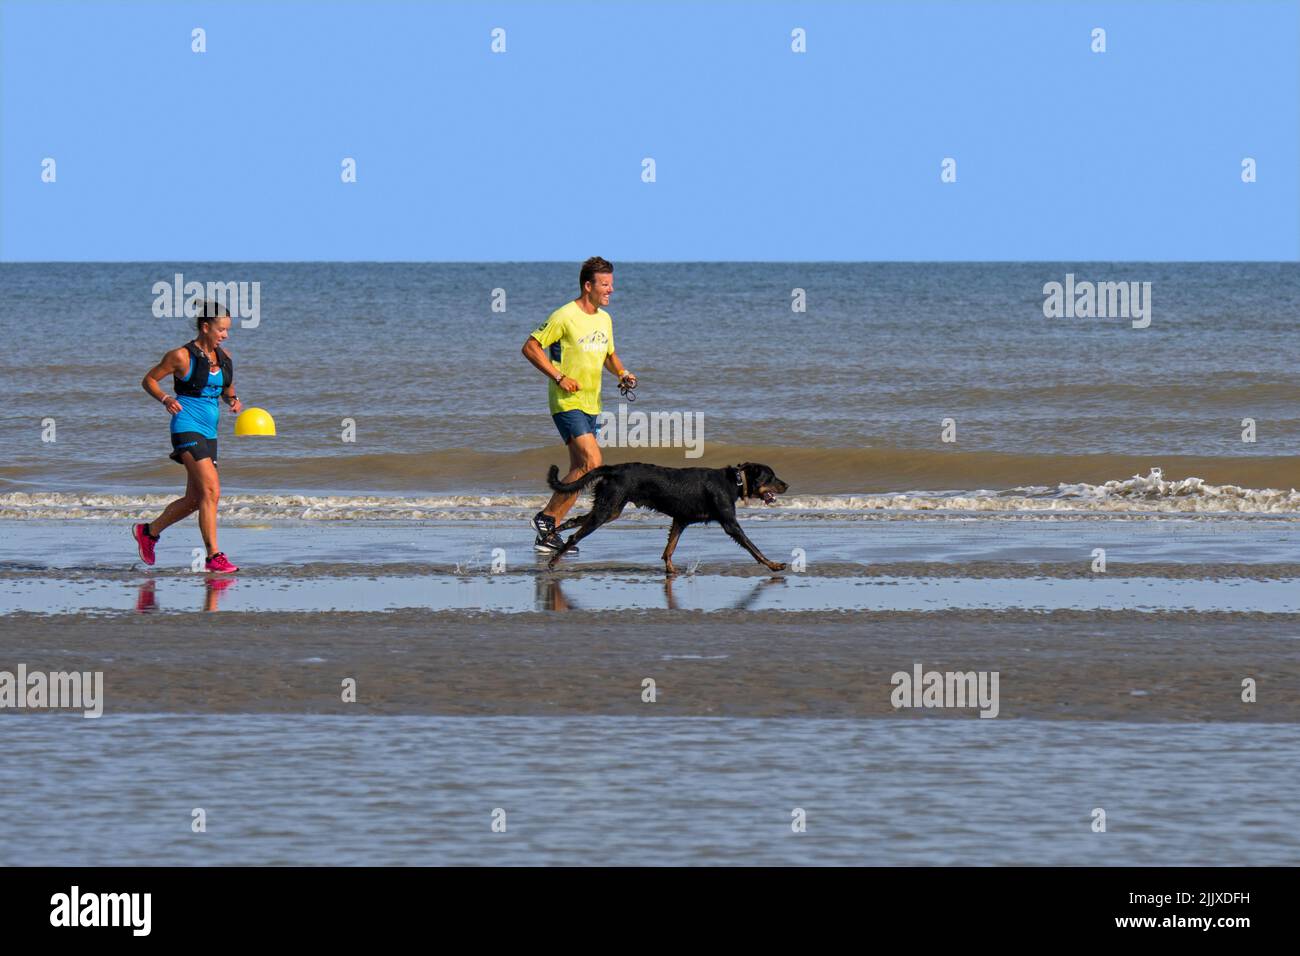 Hombre y mujer correr en la playa de arena con perro soltado / fuera de plomo a lo largo de la costa del Mar del Norte en verano Foto de stock